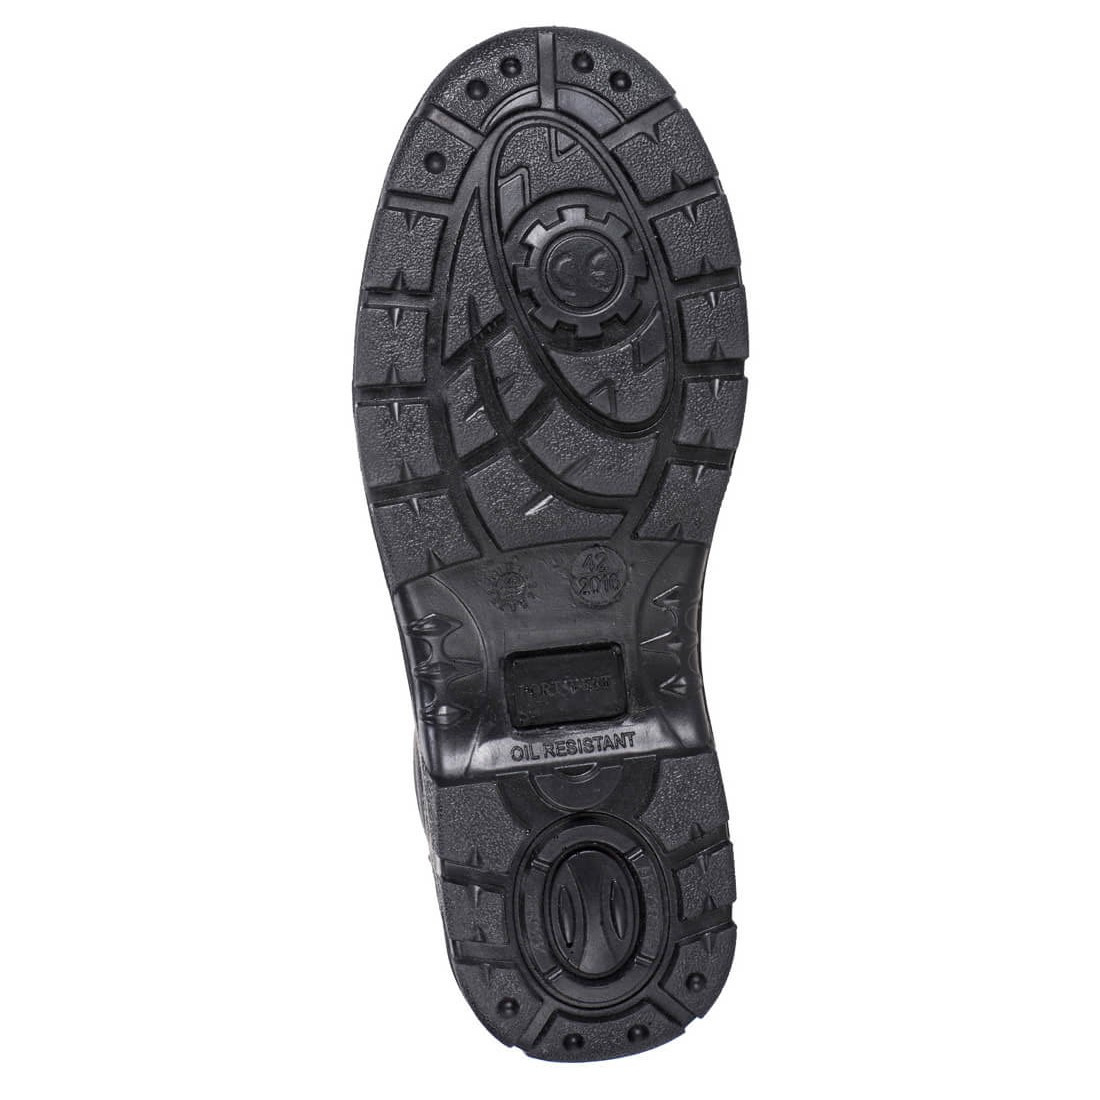 Brodequin S3 Kumo Surembout renforcé - Les chaussures de protection